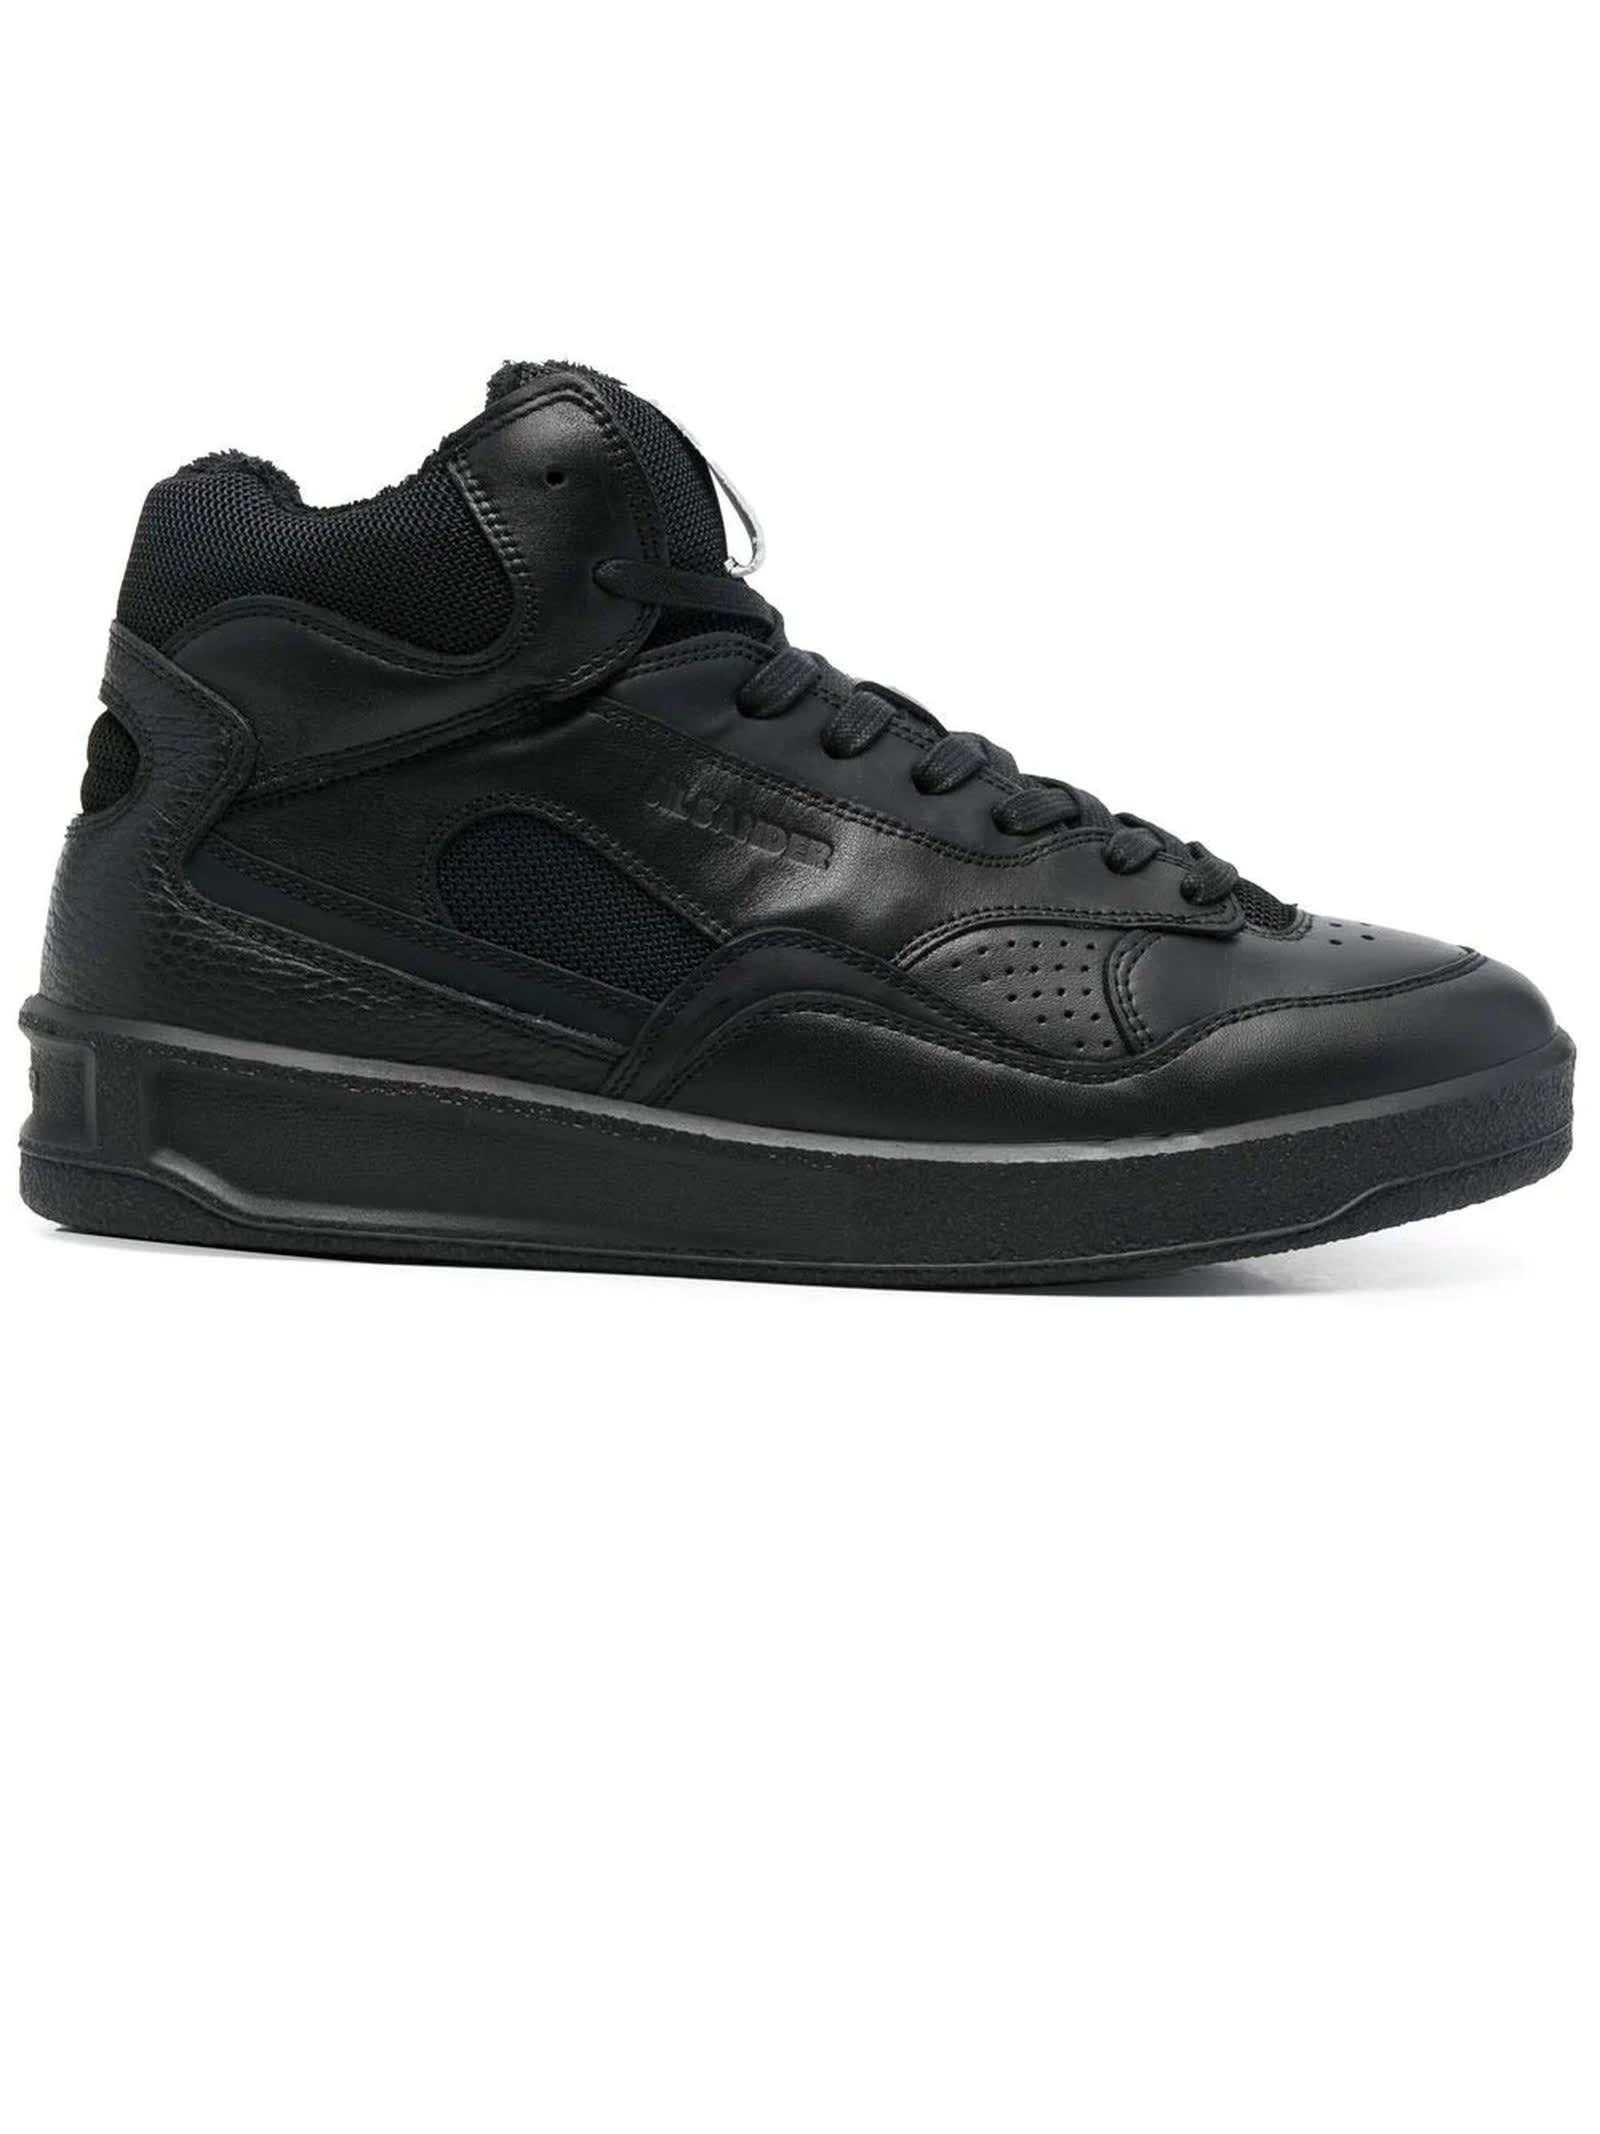 Jil Sander Black Calf Leather High-top Sneakers